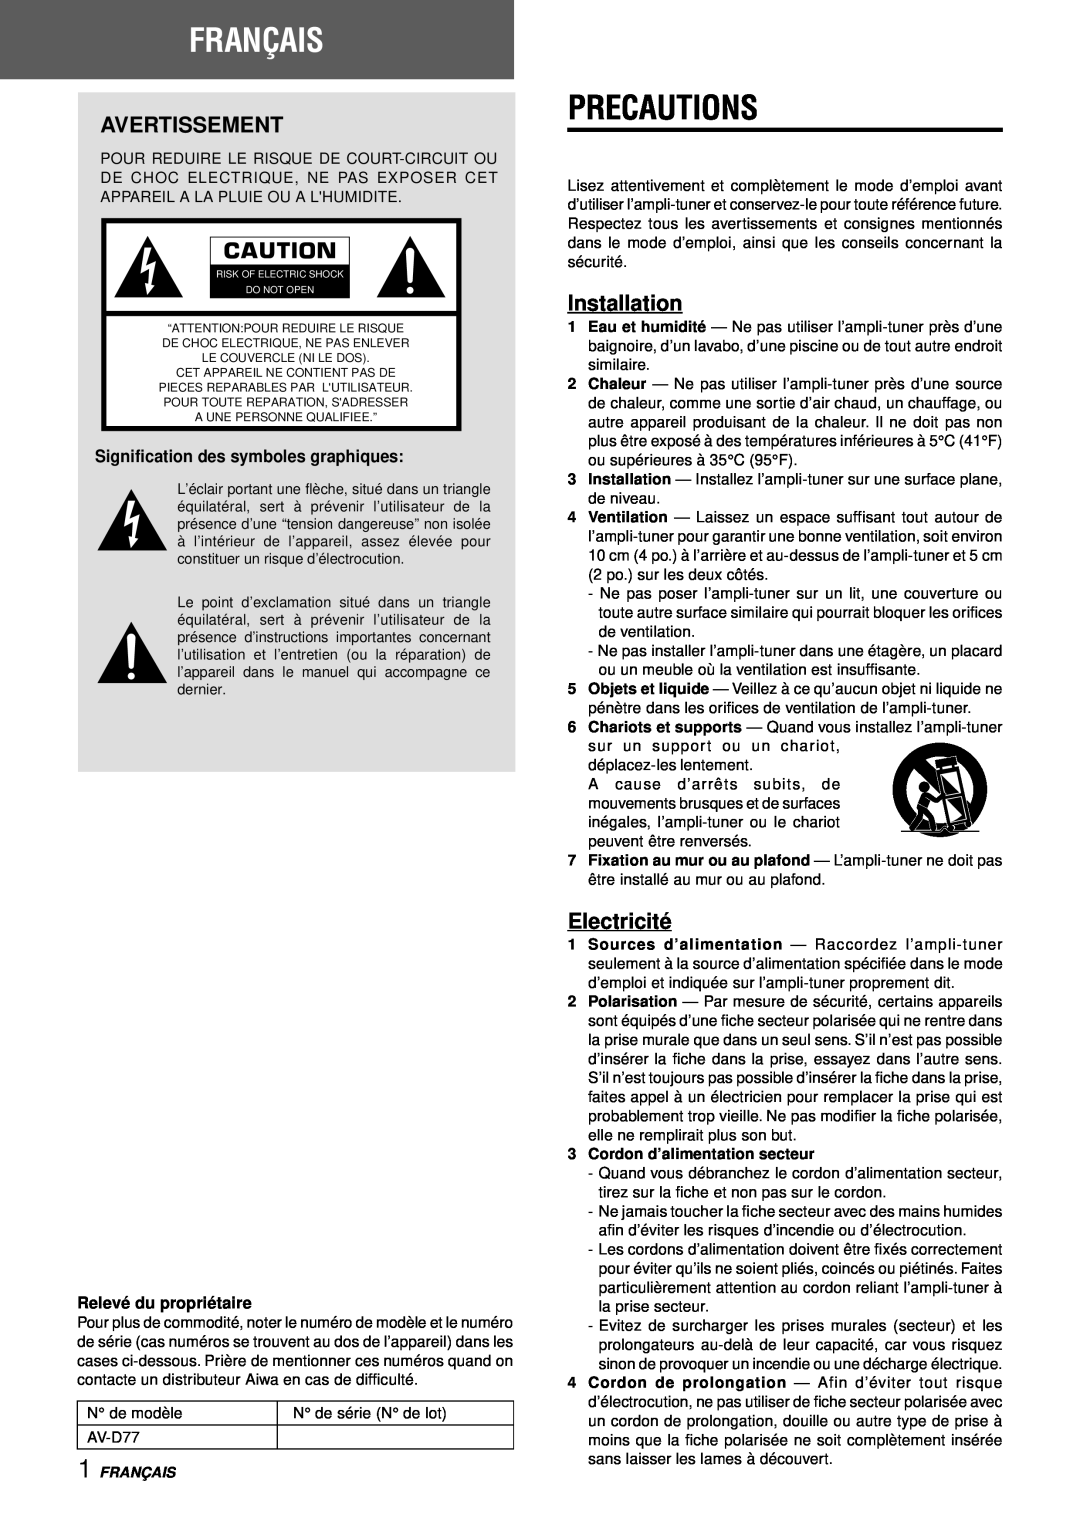 Aiwa AV-D77 manual Français, Avertissement, Electricité, Precautions, Installation, Signification des symboles graphiques 